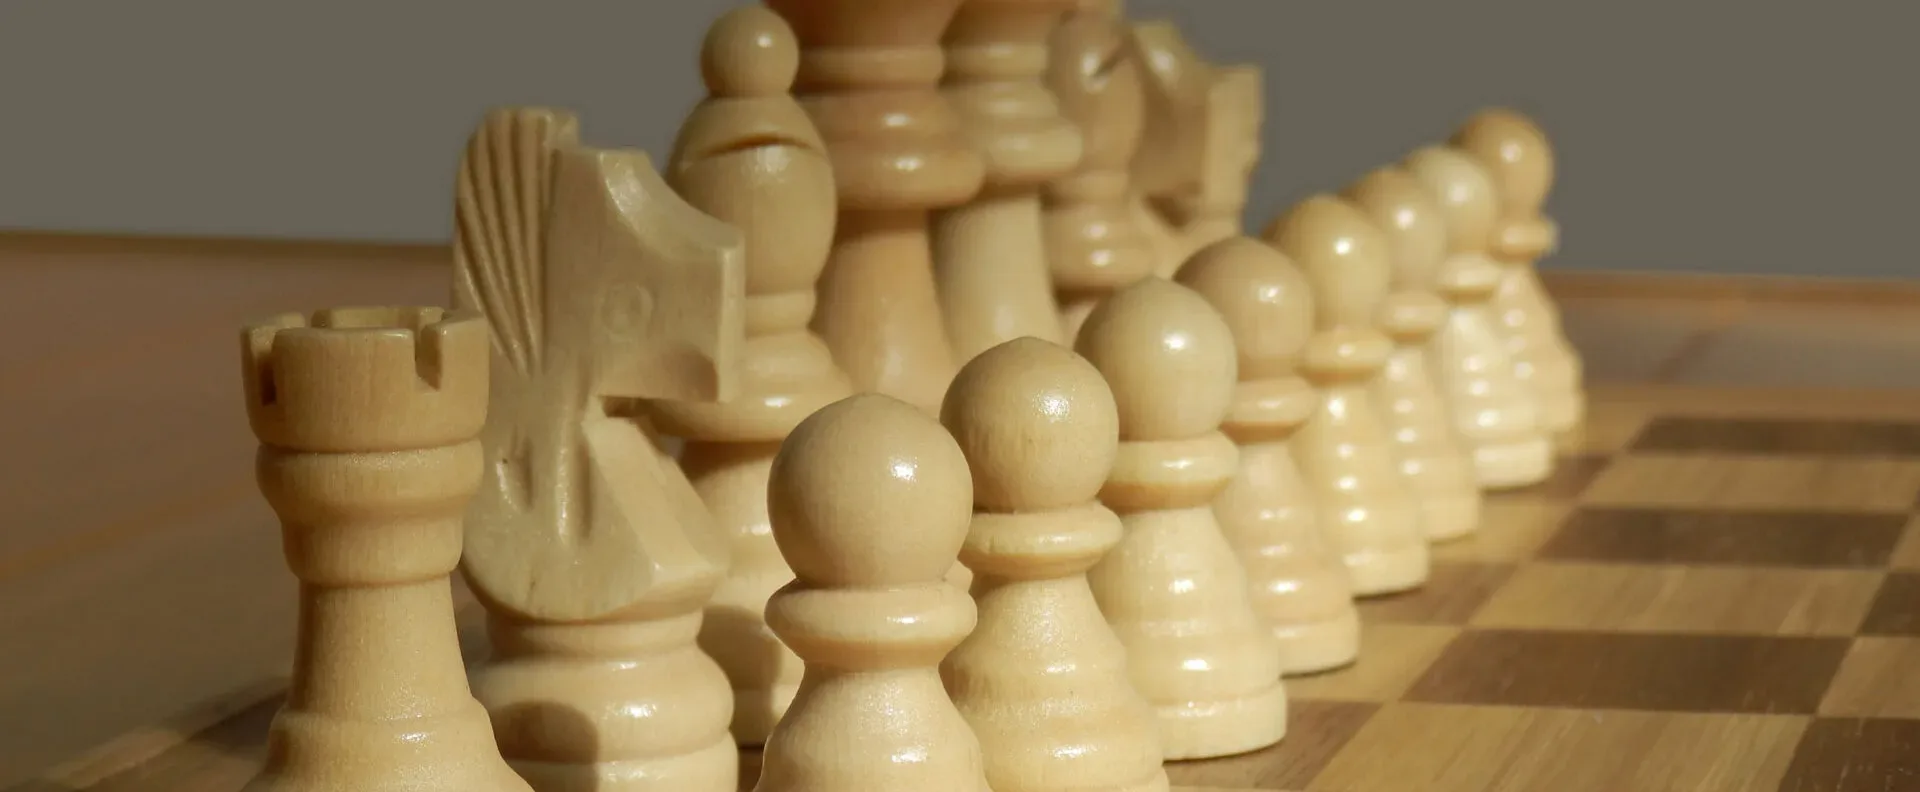 Ver categoría de ajedrez de madera infantil